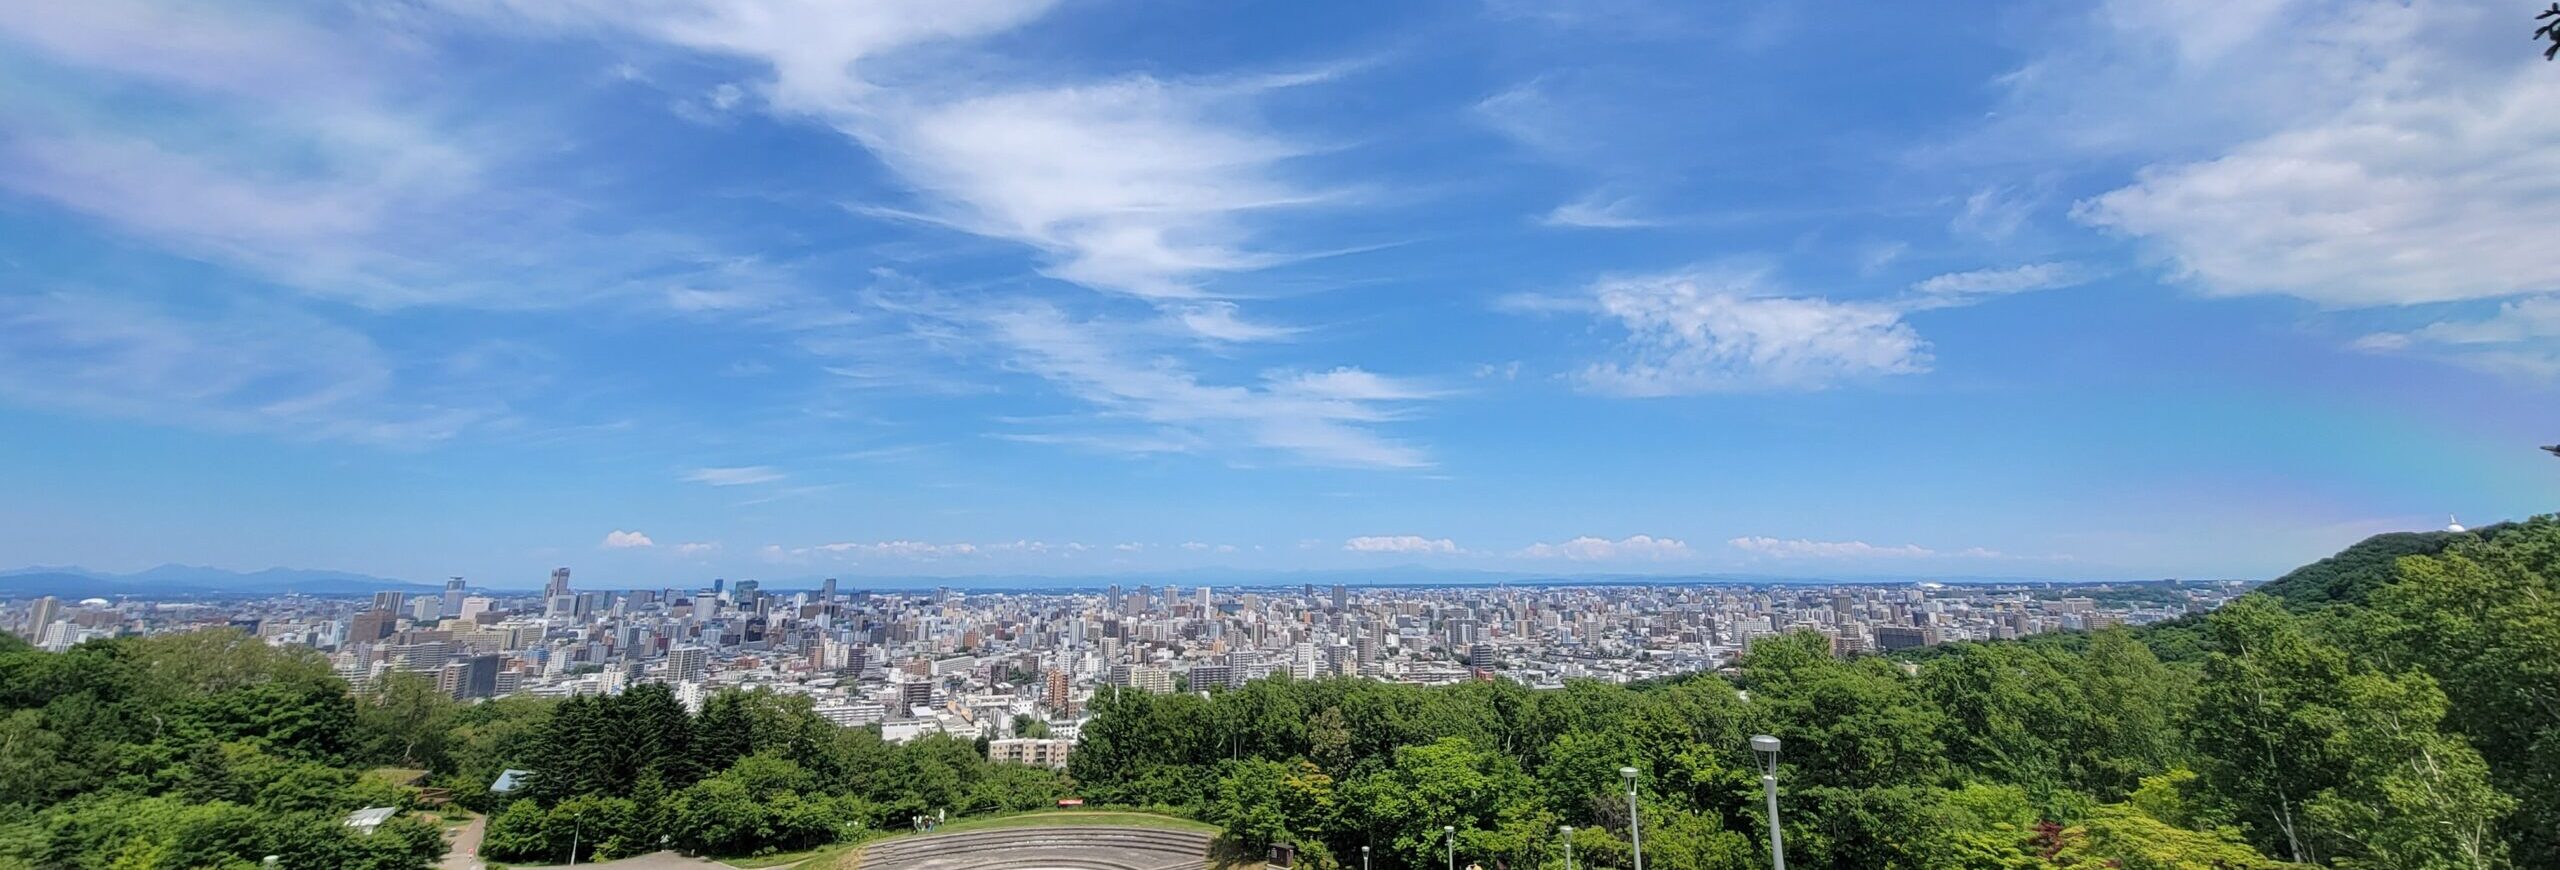 札幌市街地遠望